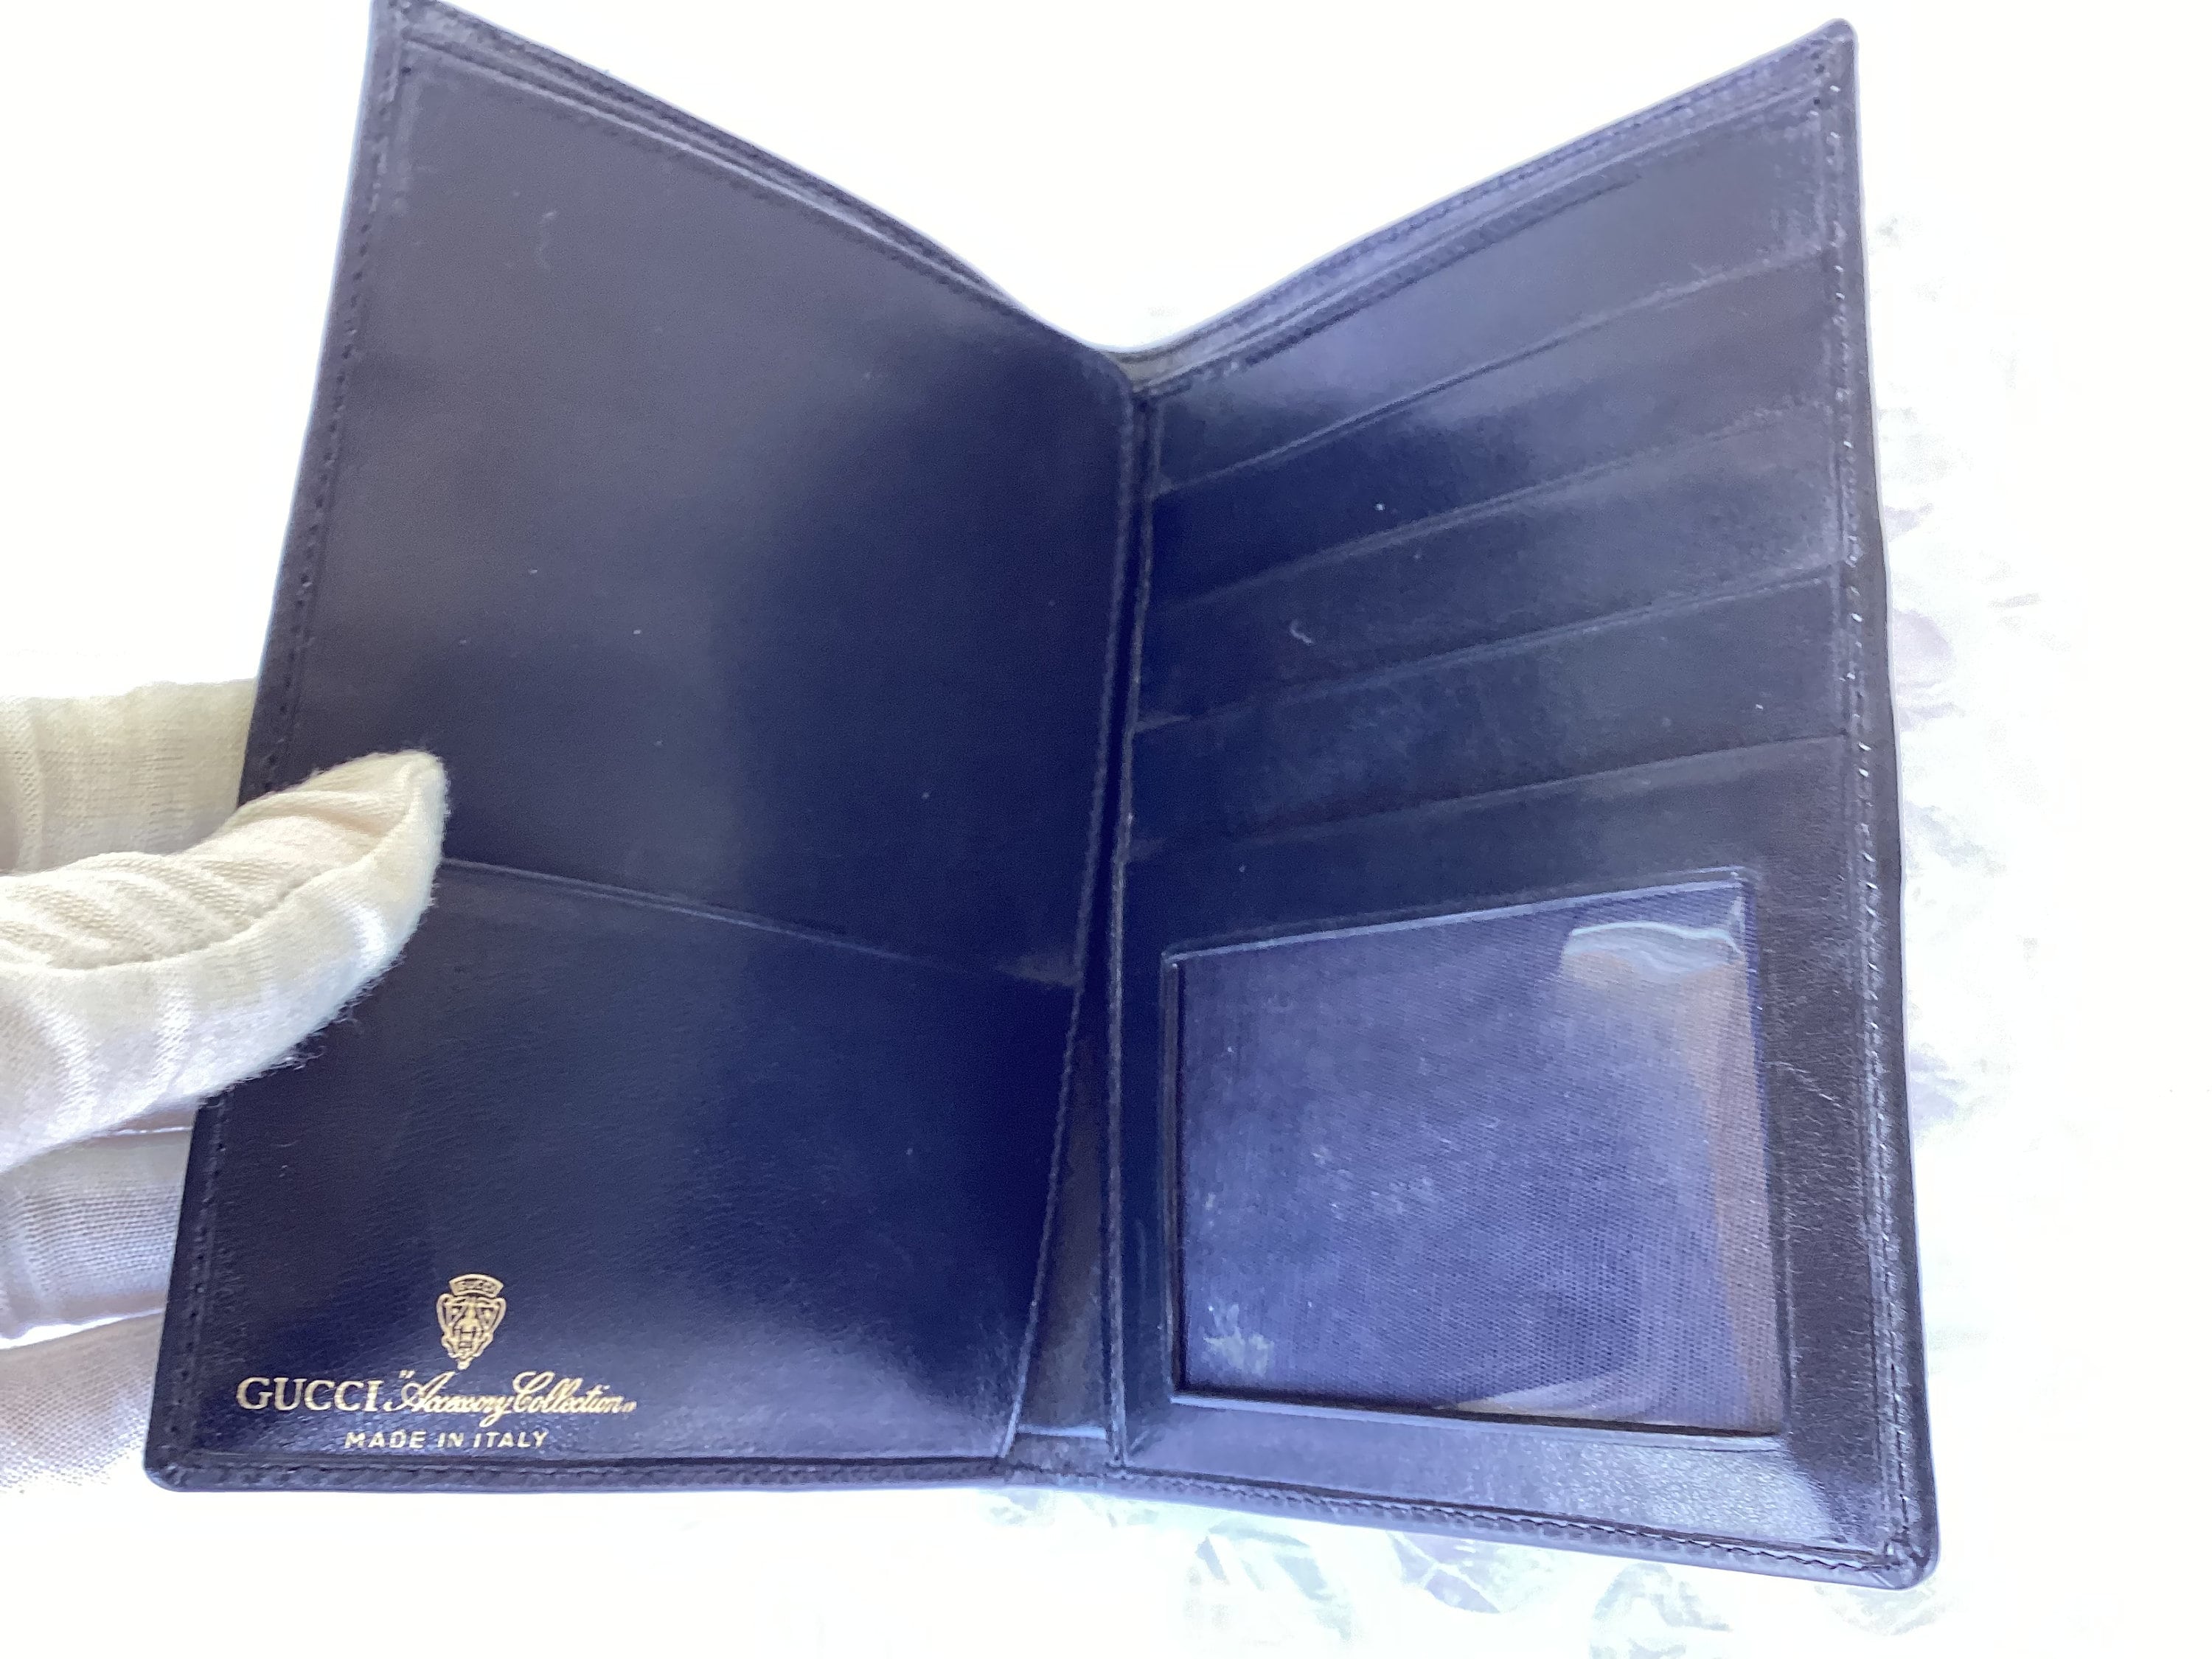 Gucci, Accessories, Sold On Mercari Gucci Passport Holder